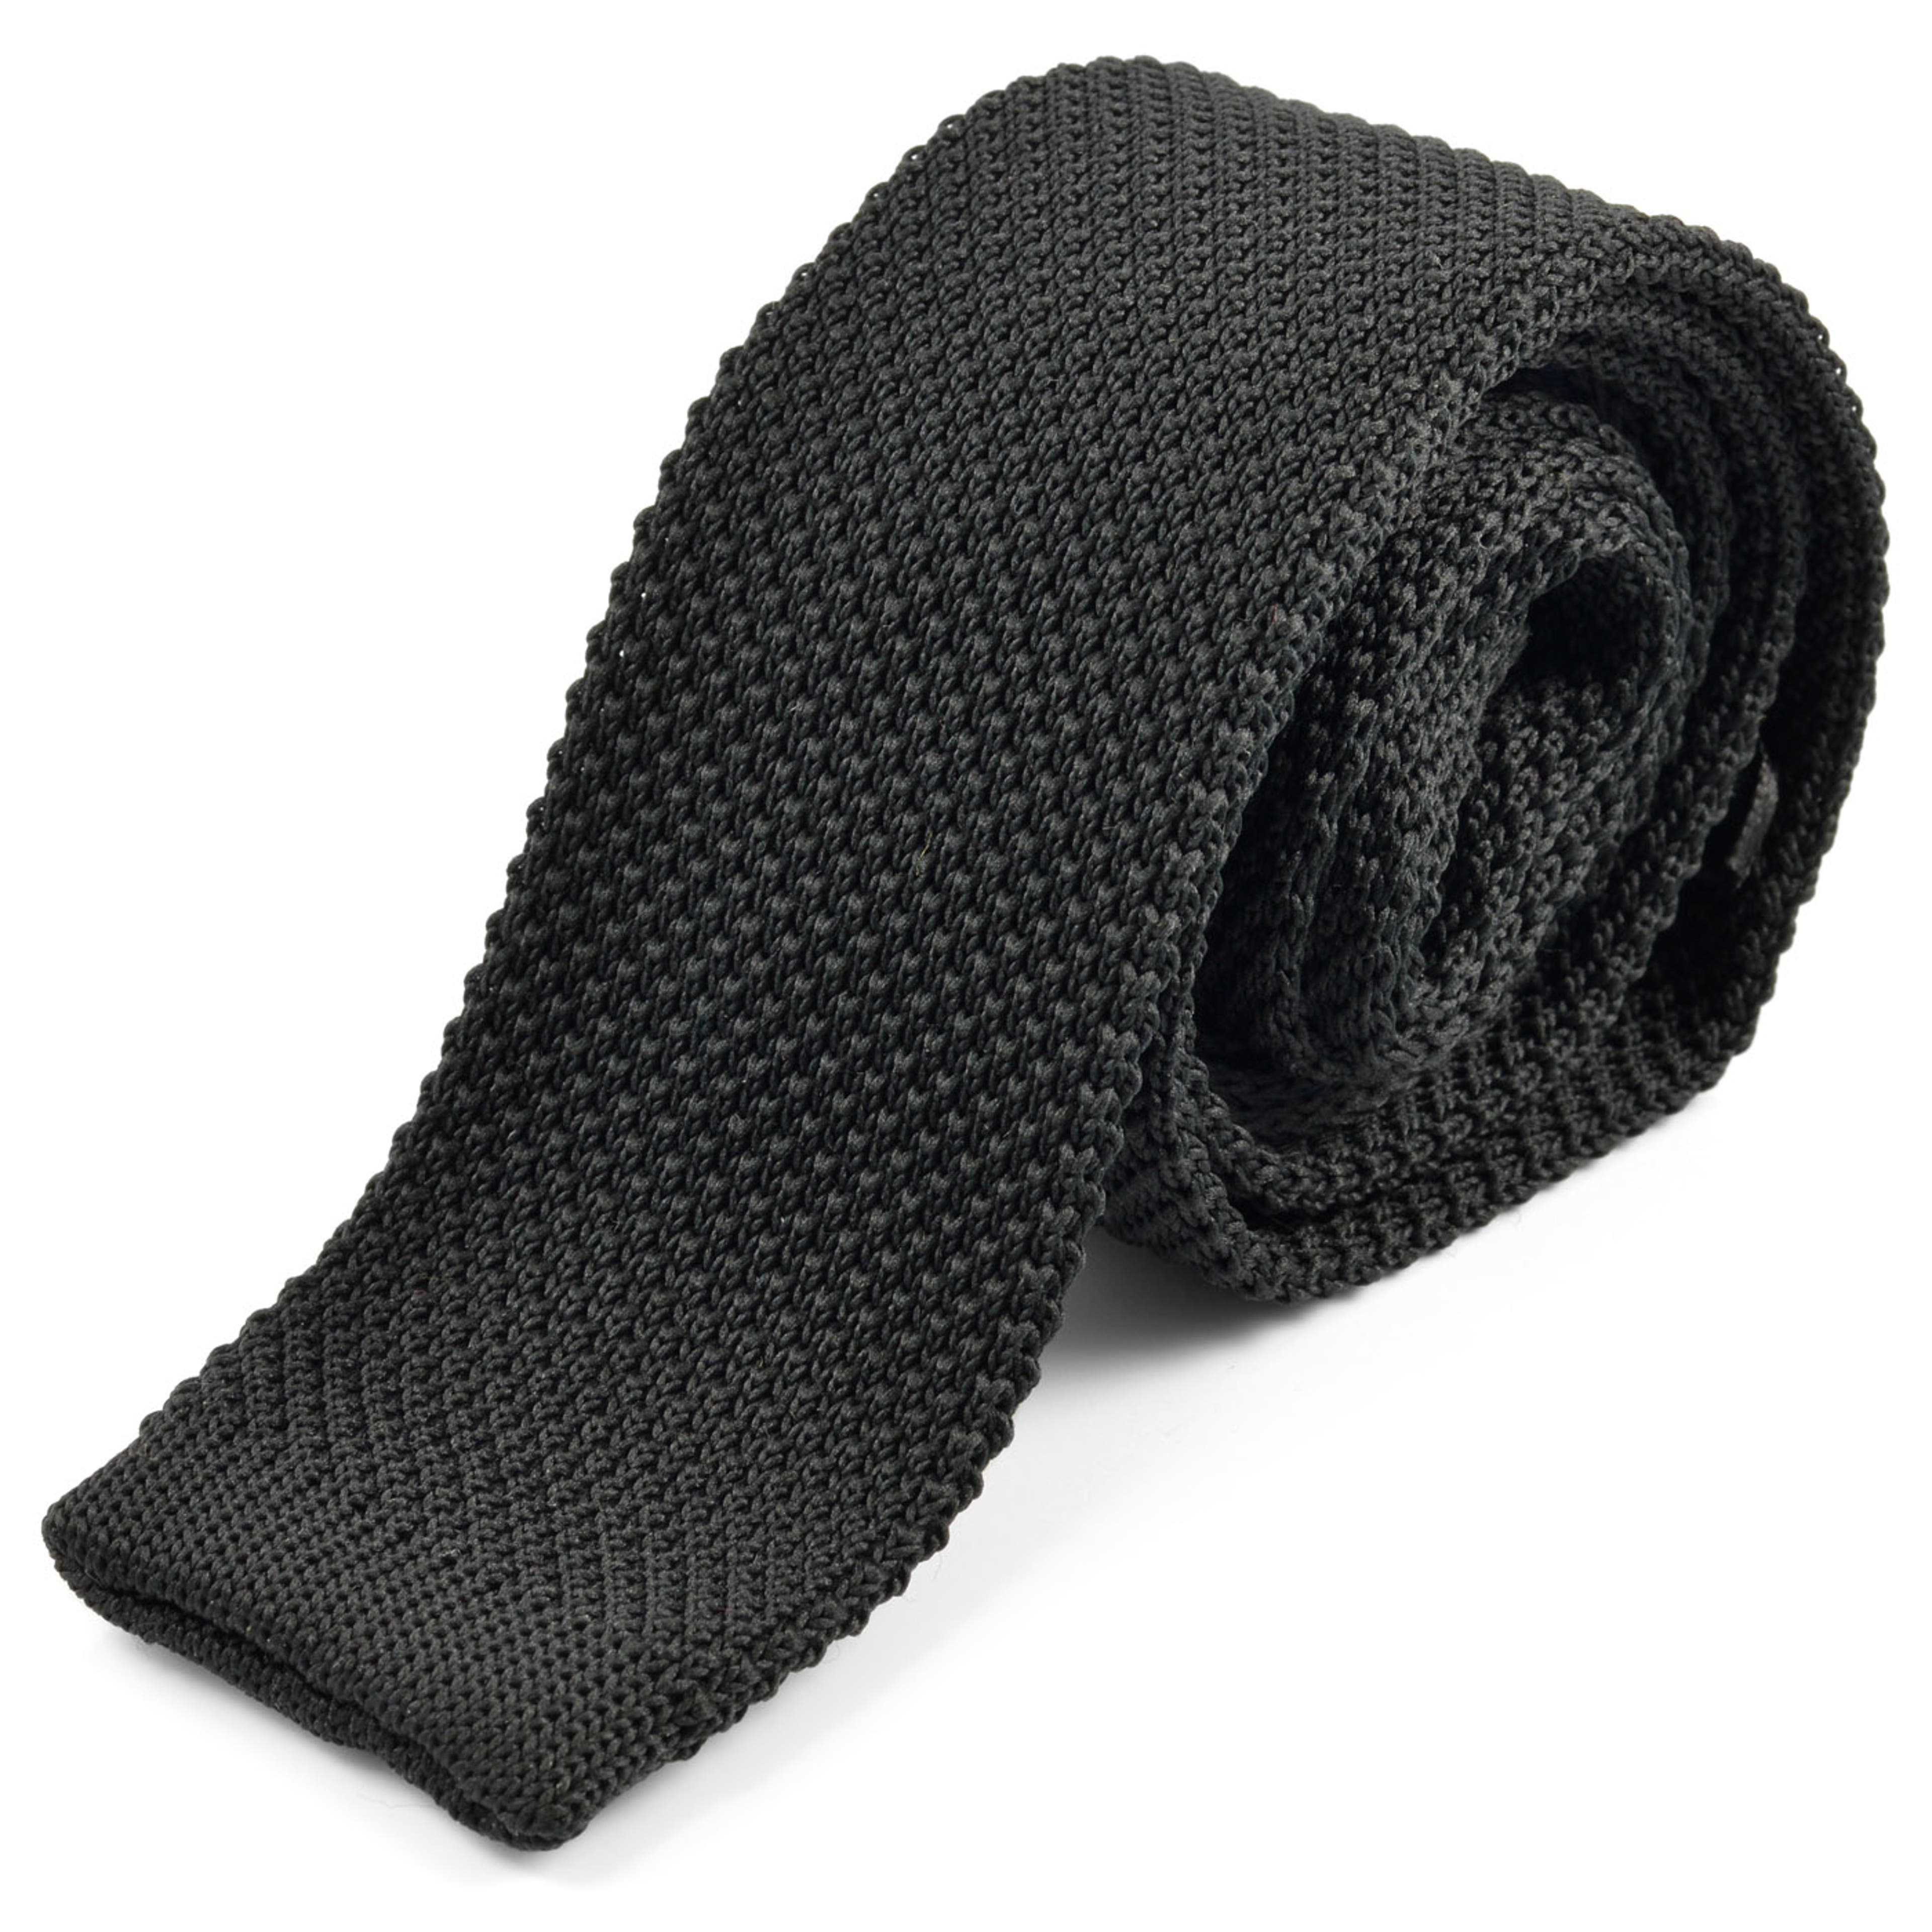 Cravate noire tricotée